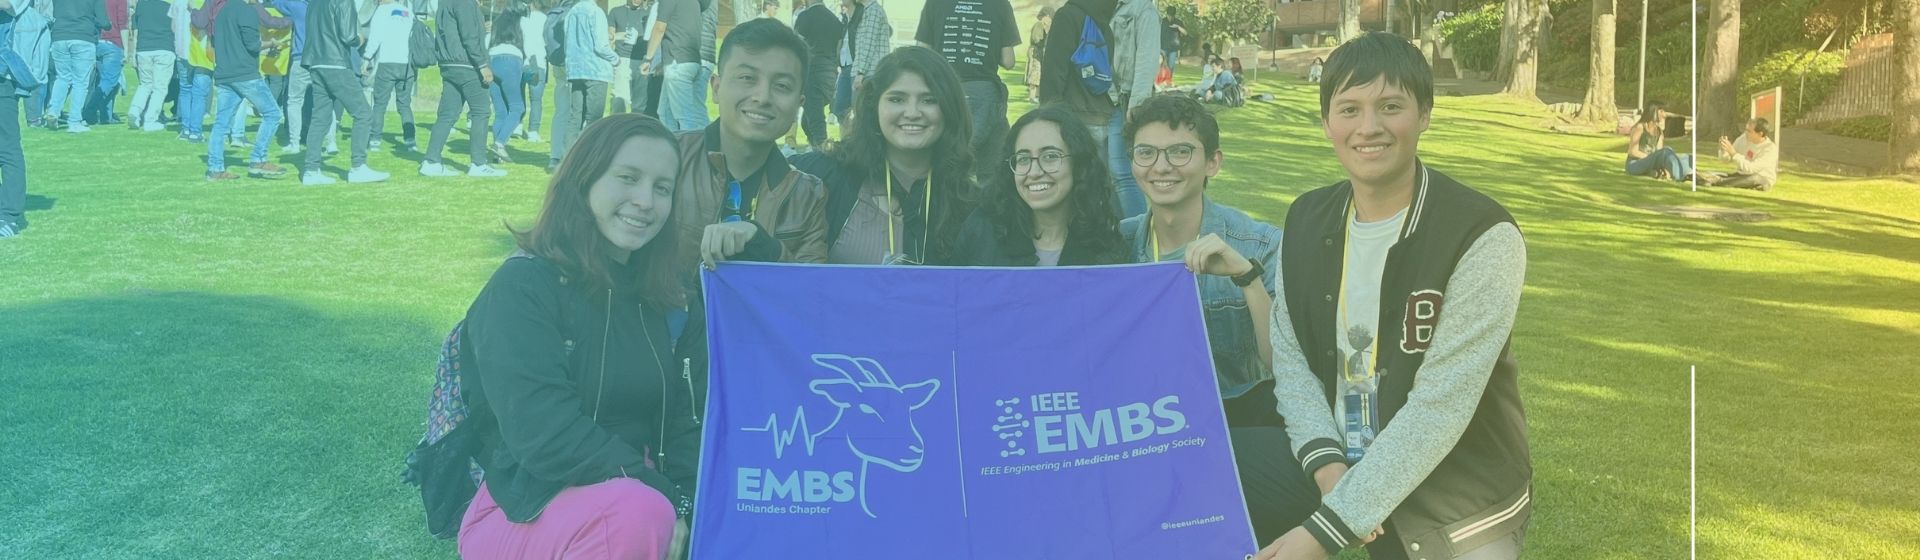 EMBS Uniandes: Impulsando la Ingeniería Biomédica y la Innovación Científica